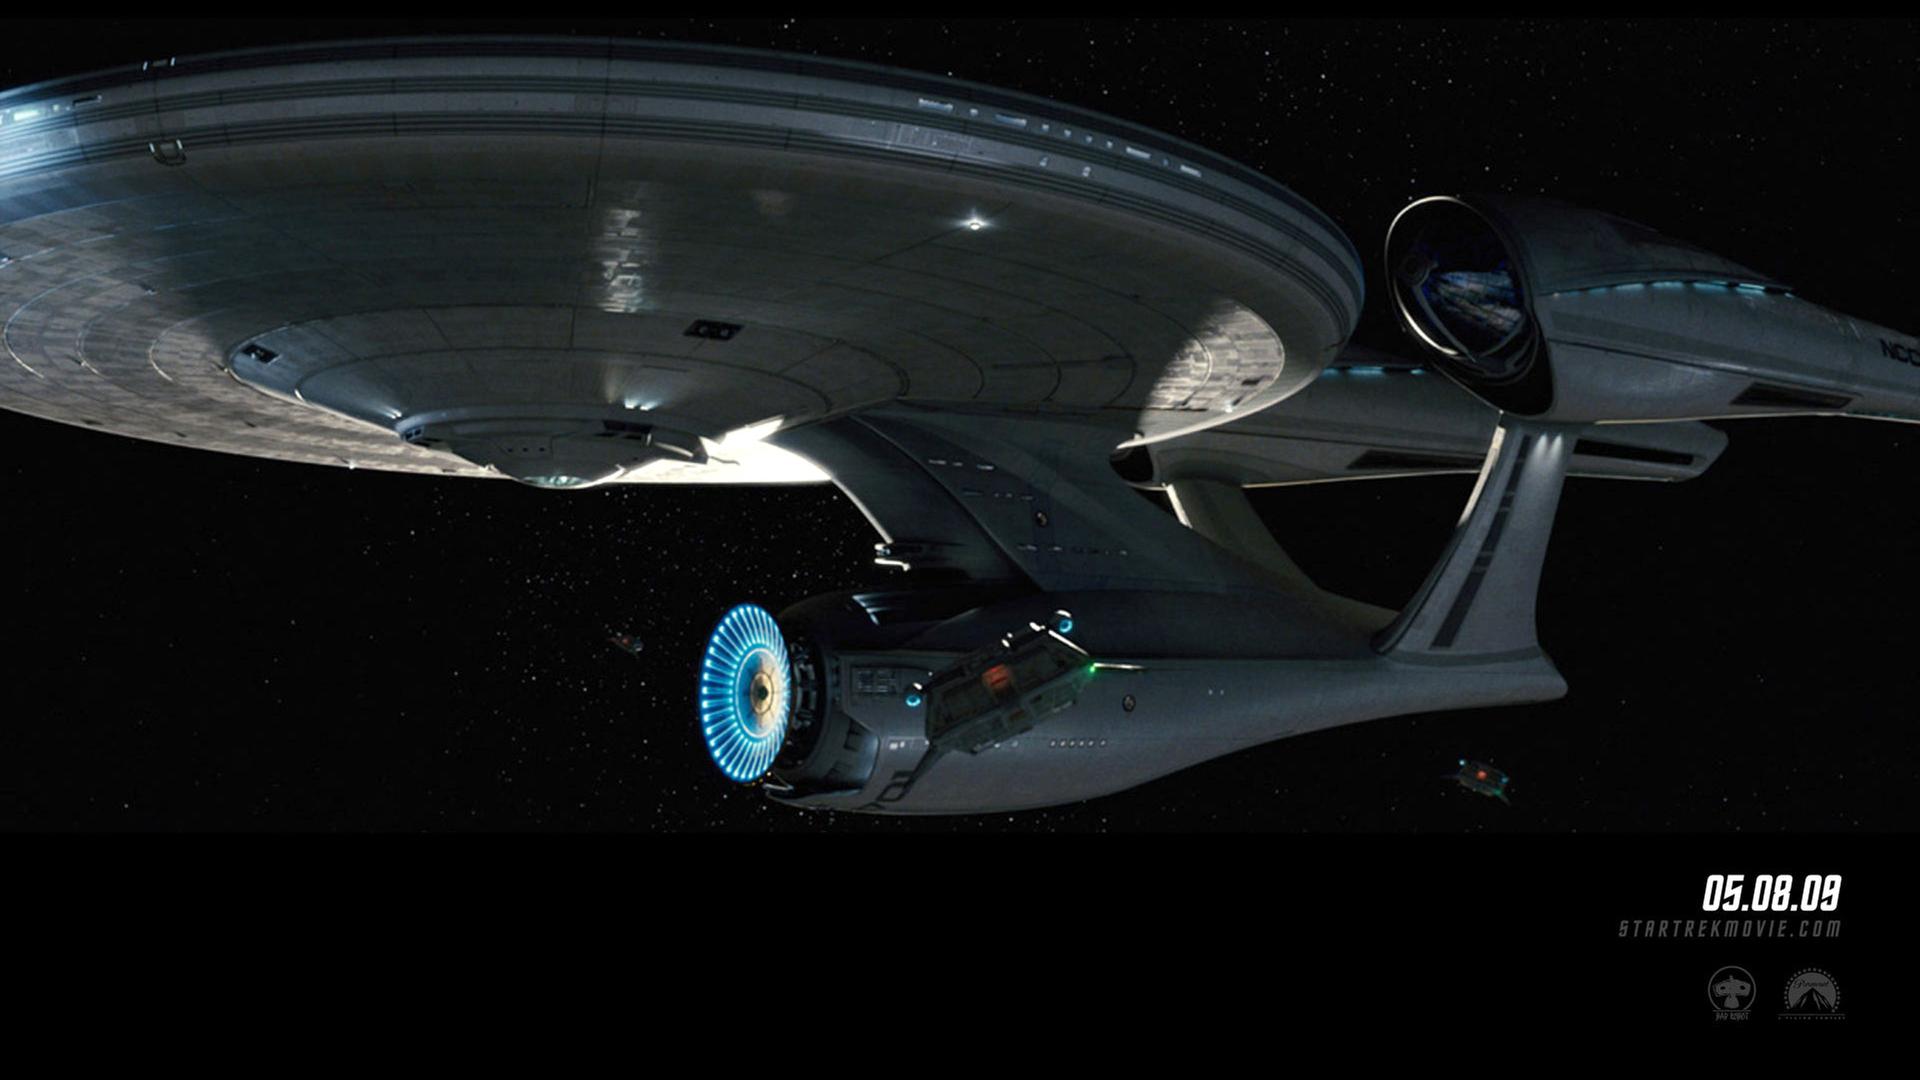 Modell des Raumschiffs Enterprise aus den "Star Trek"-Serien.